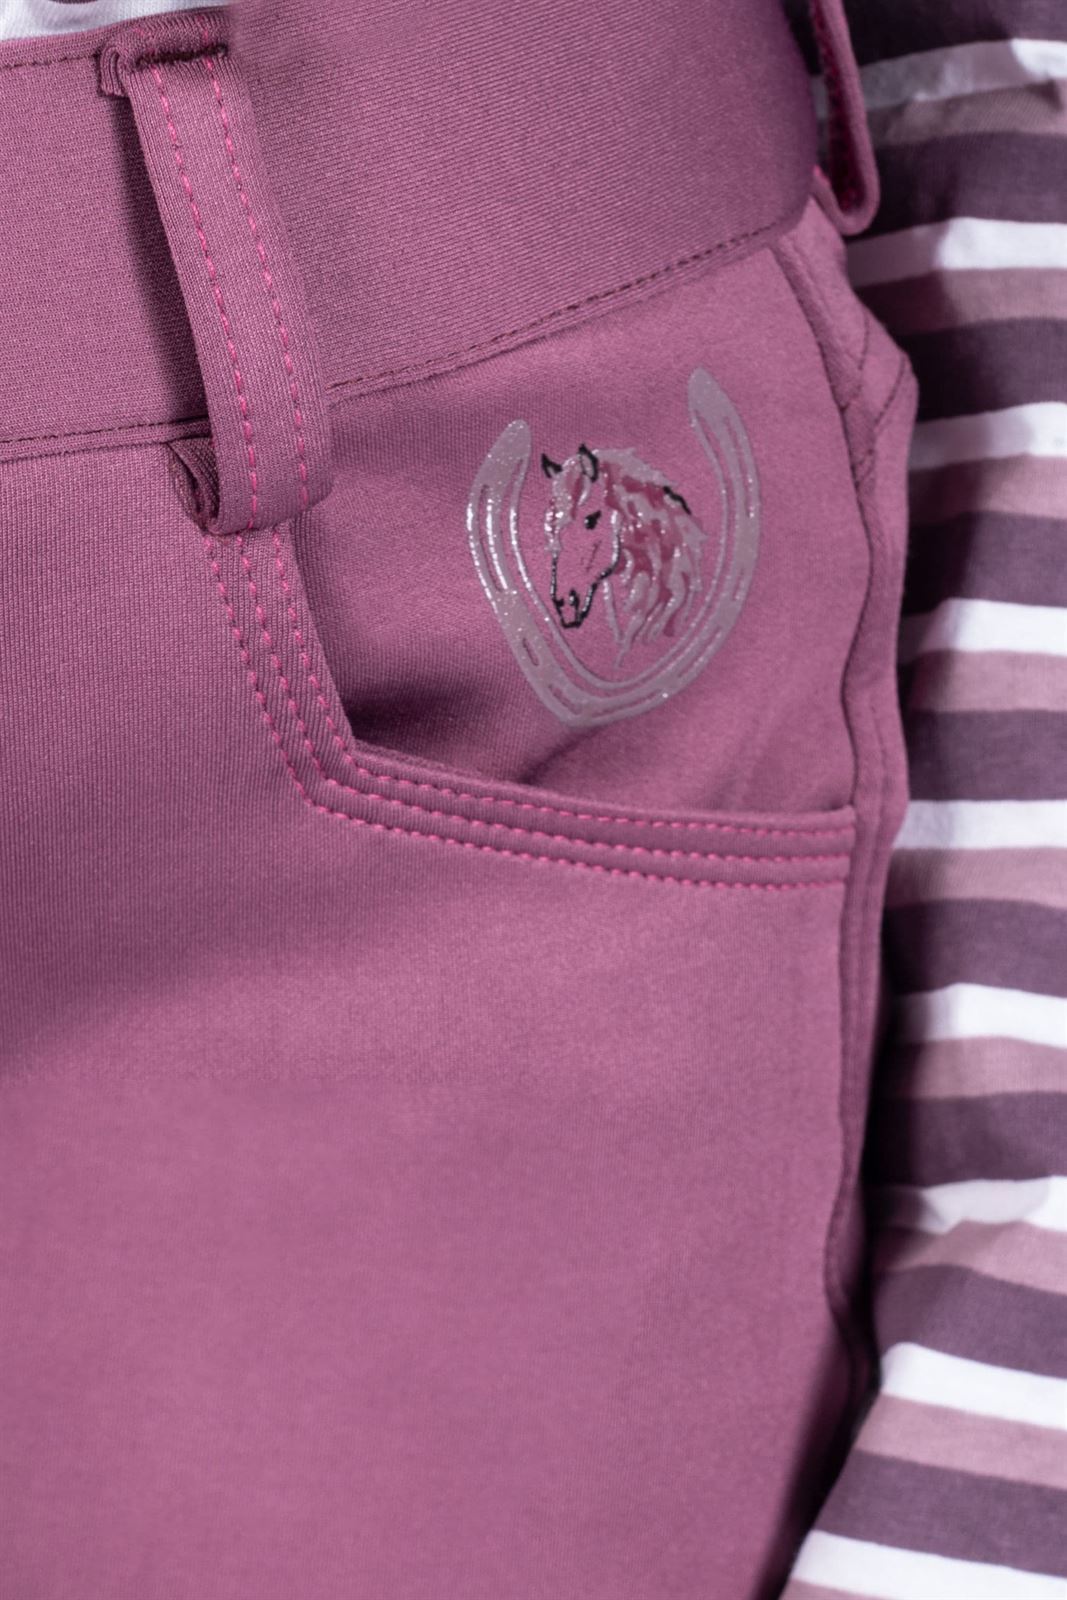 Pantalón niña HKM Sports Equipment Alva culera de grip, color lila oscuro - Imagen 2